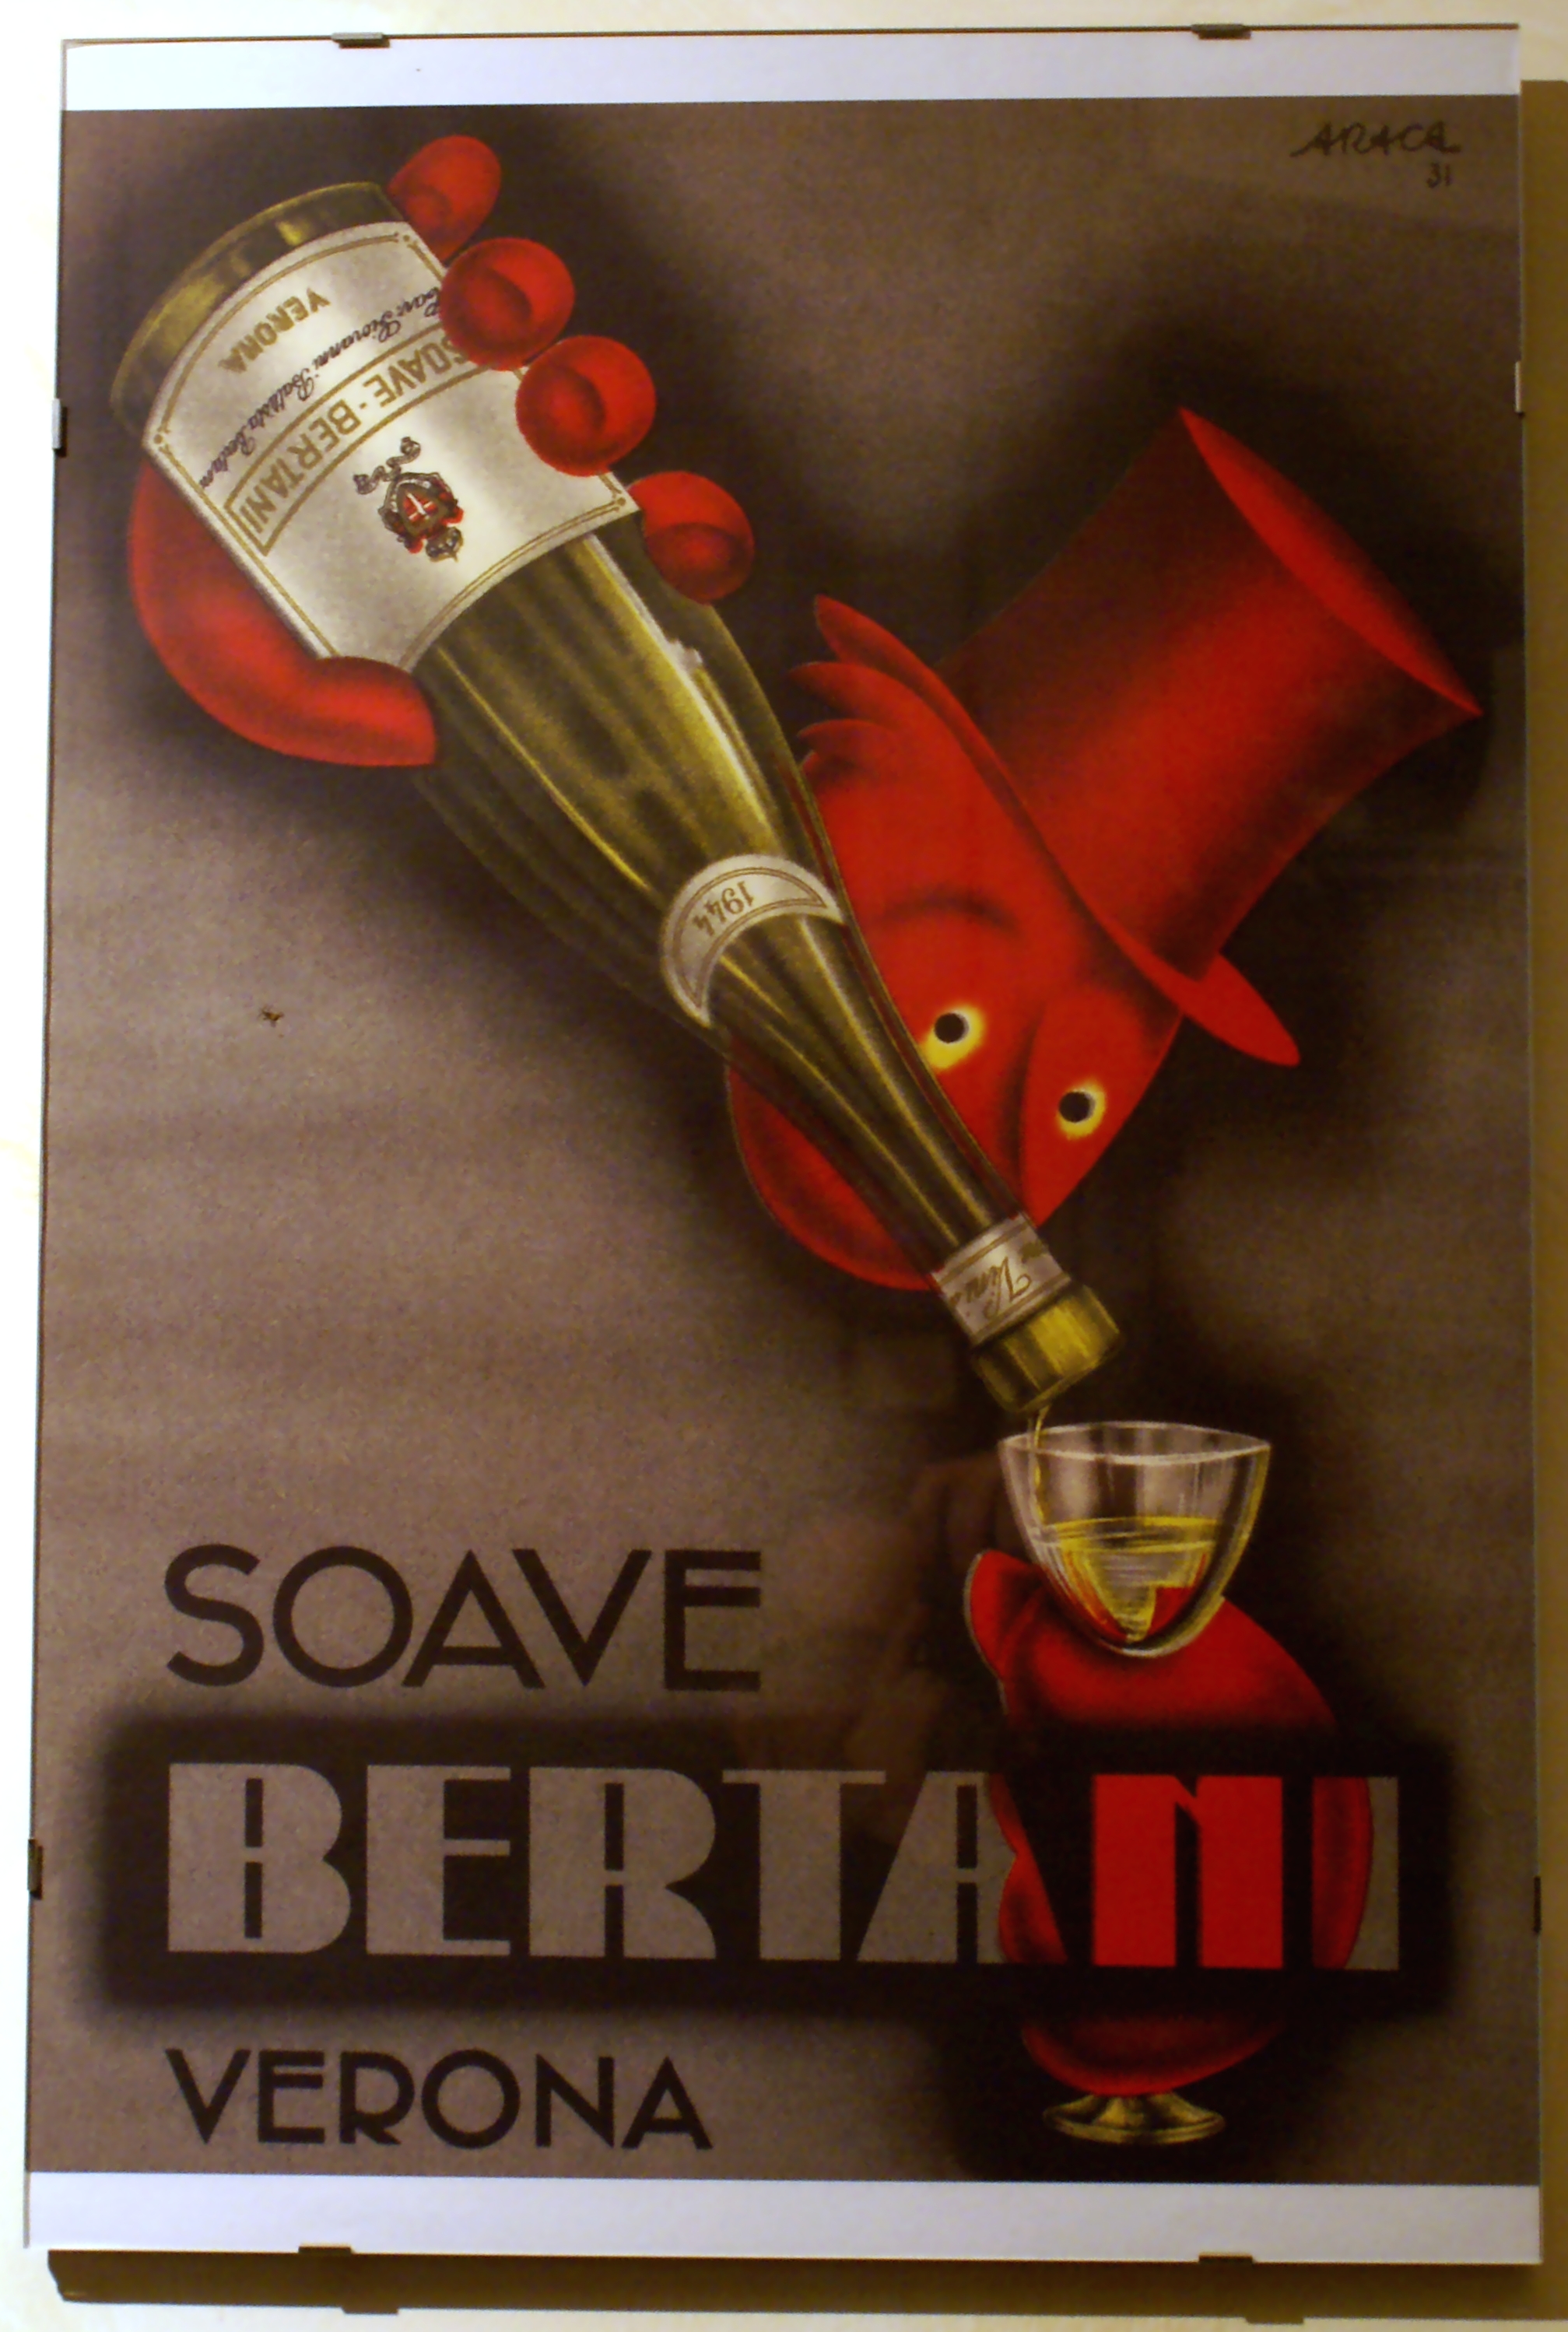 Bertani 1920 poster